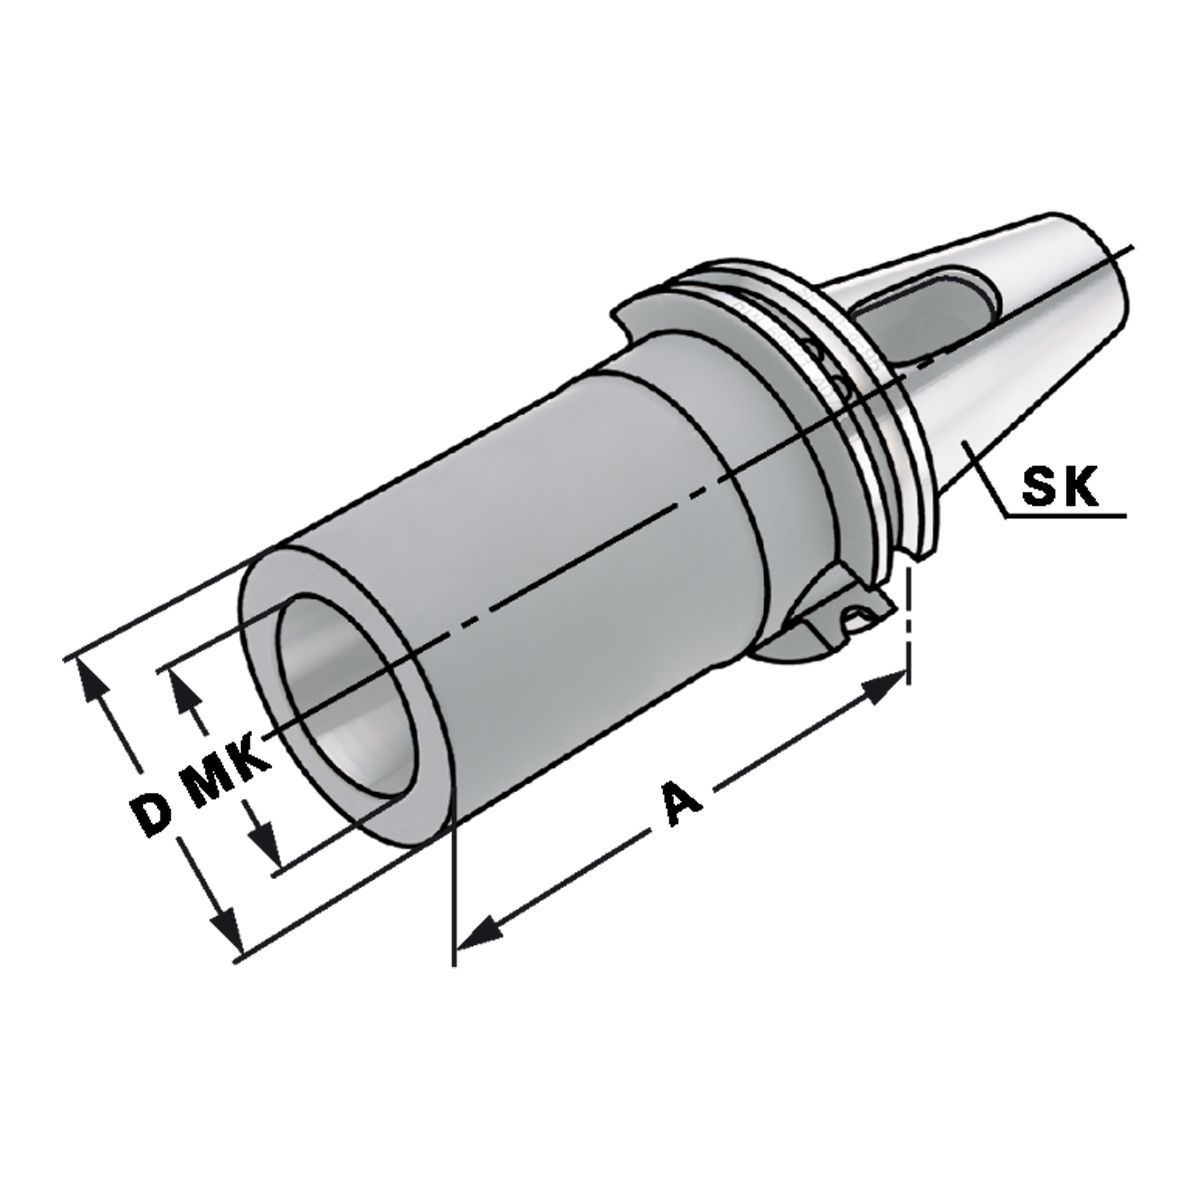 Zwischenhülse SK 40-3-133 für MK mit Austreiblappen DIN 6383